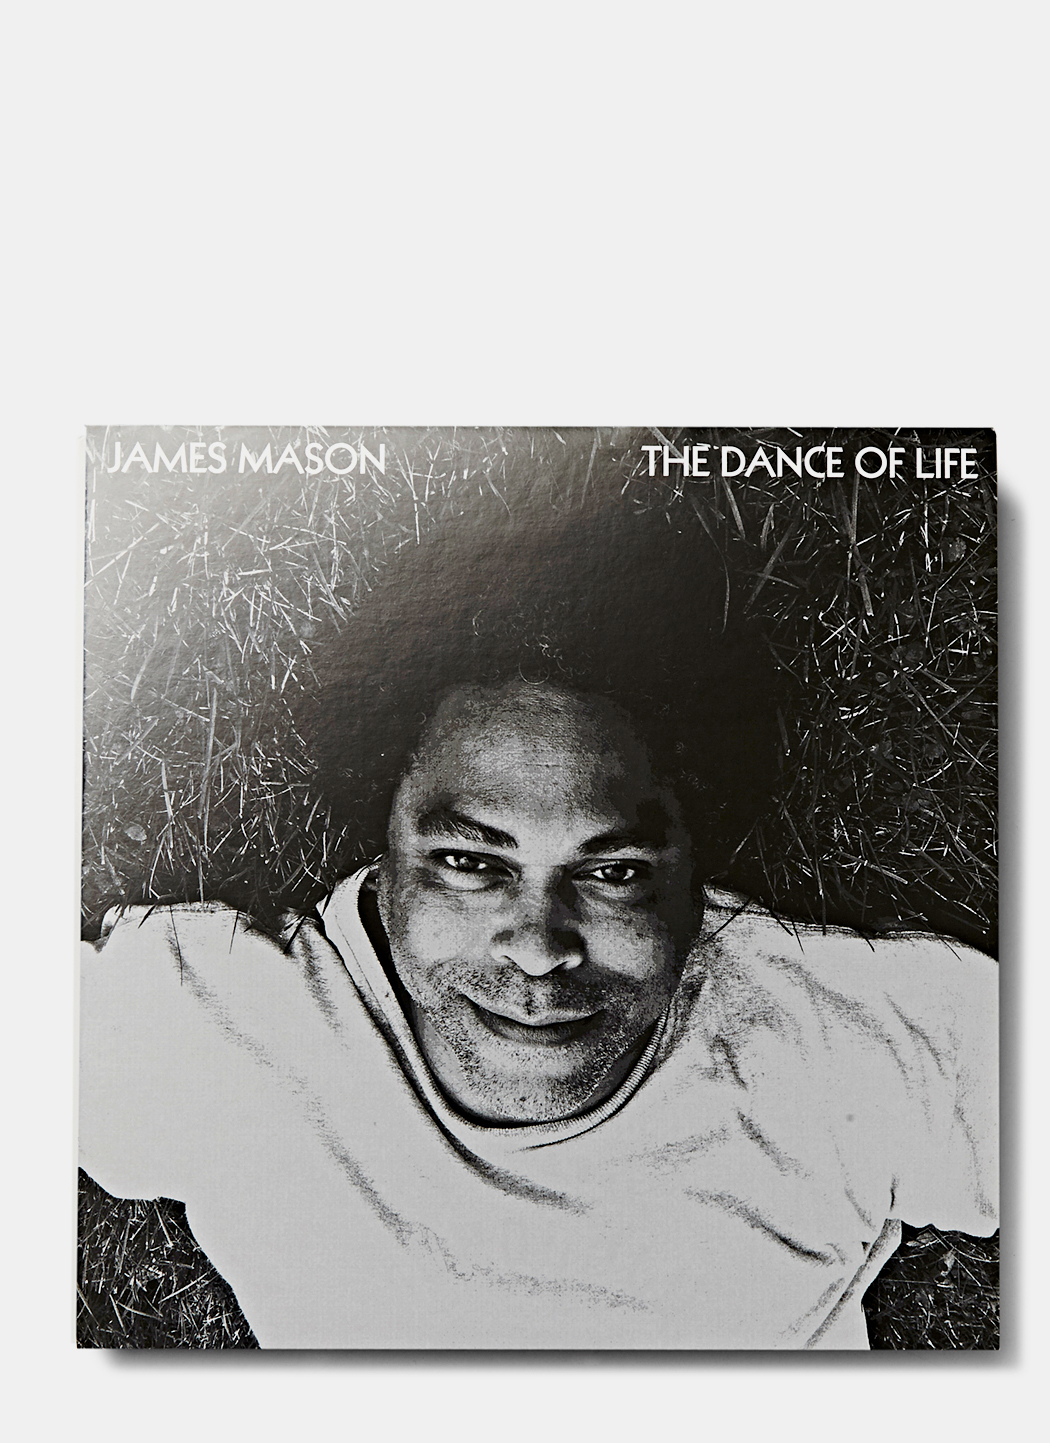 James Mason – The Dance of Life